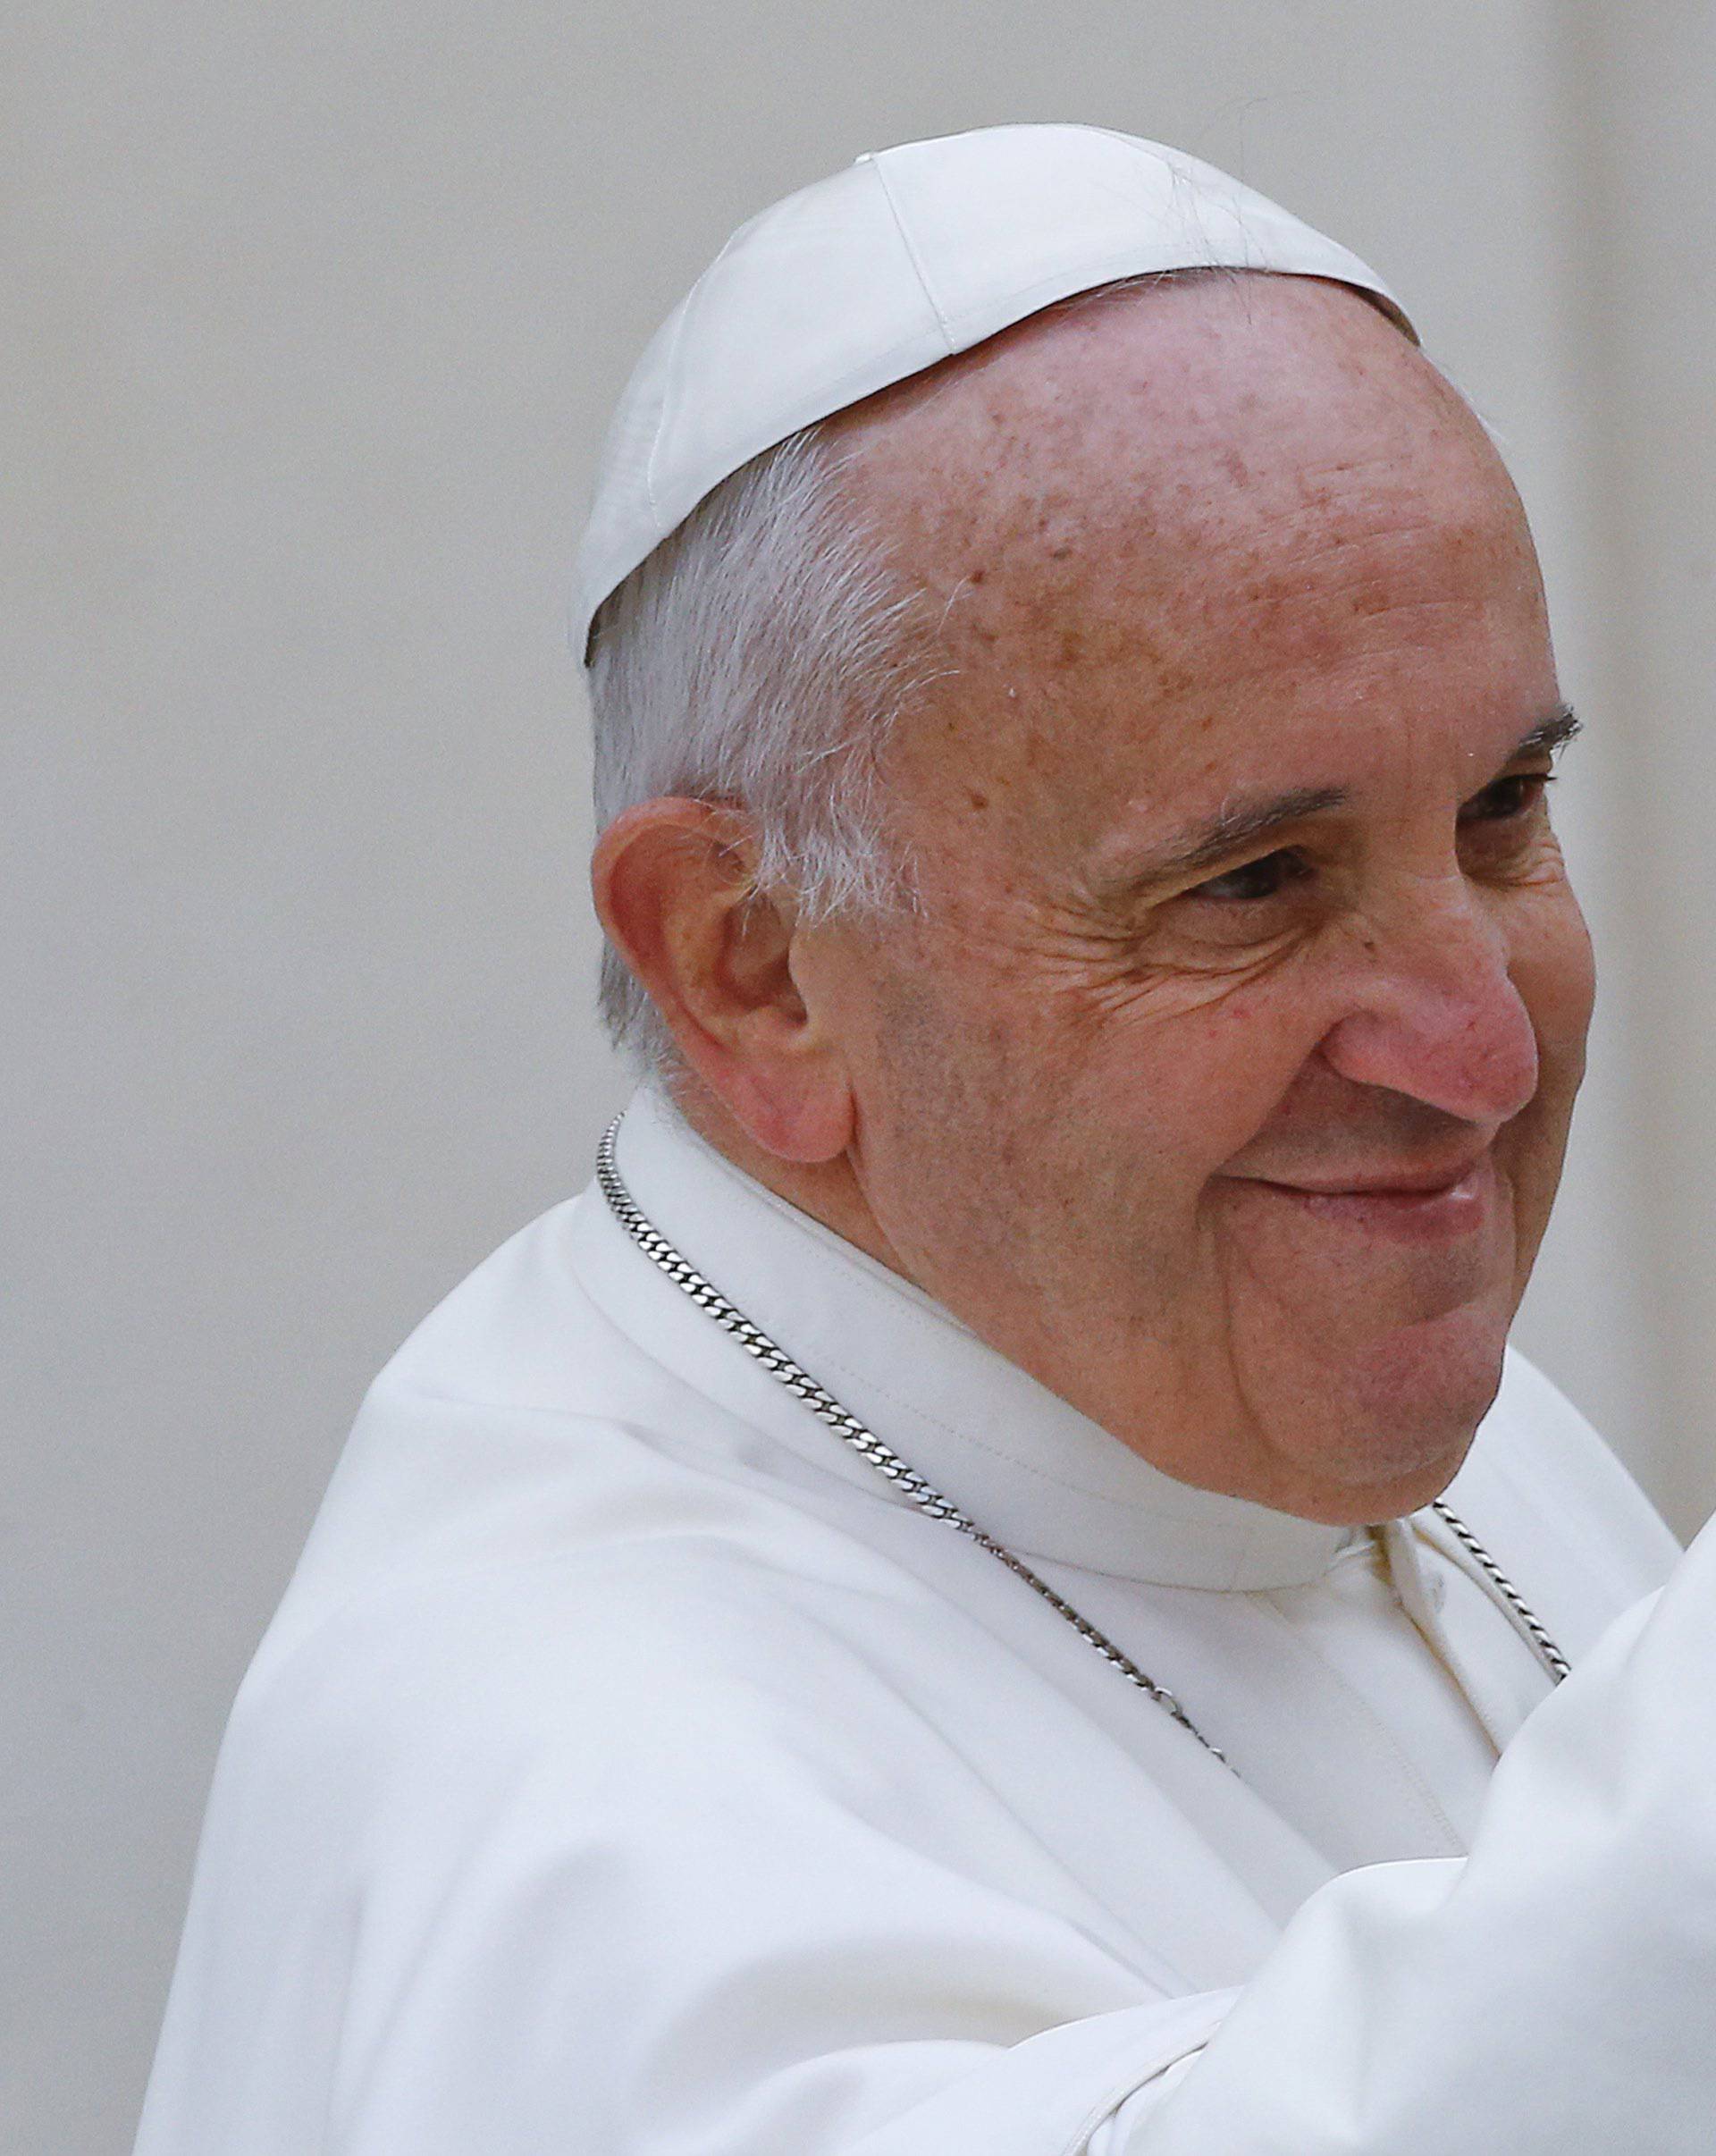 Htio doći do Pape: Rastrojeni muškarac autom probio ogradu